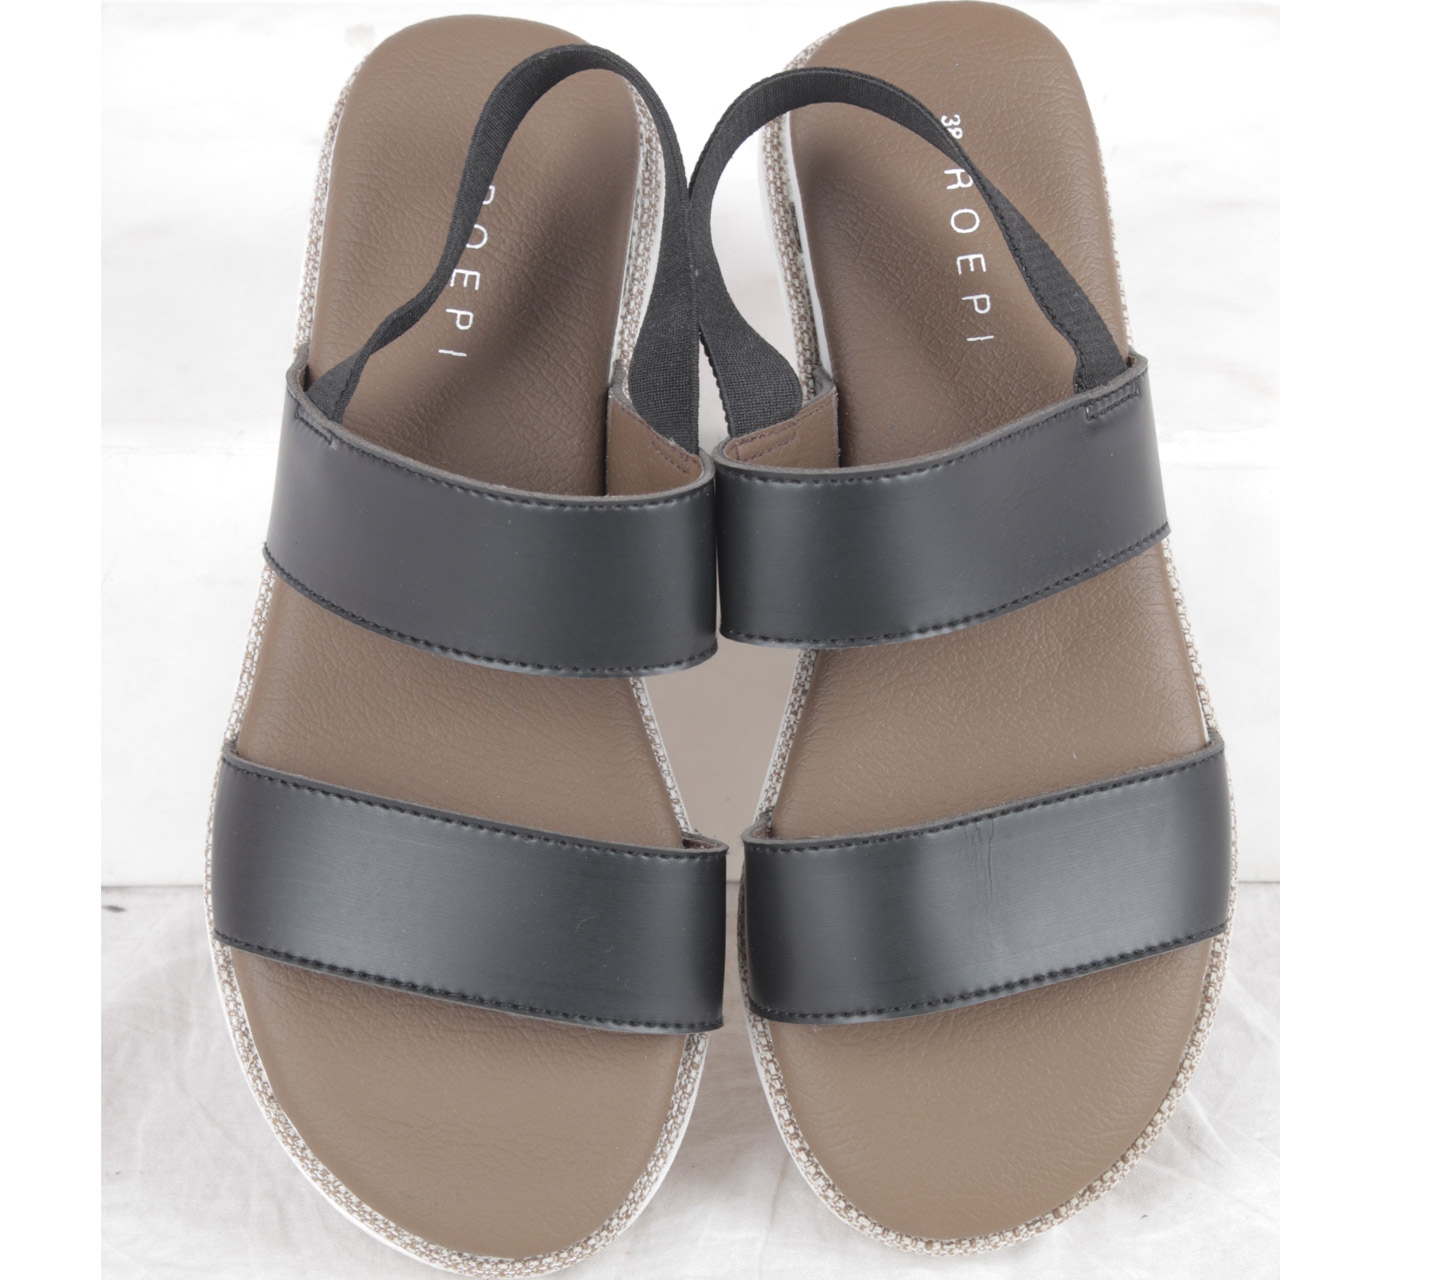 Roepi Black And White Platforn Sandals